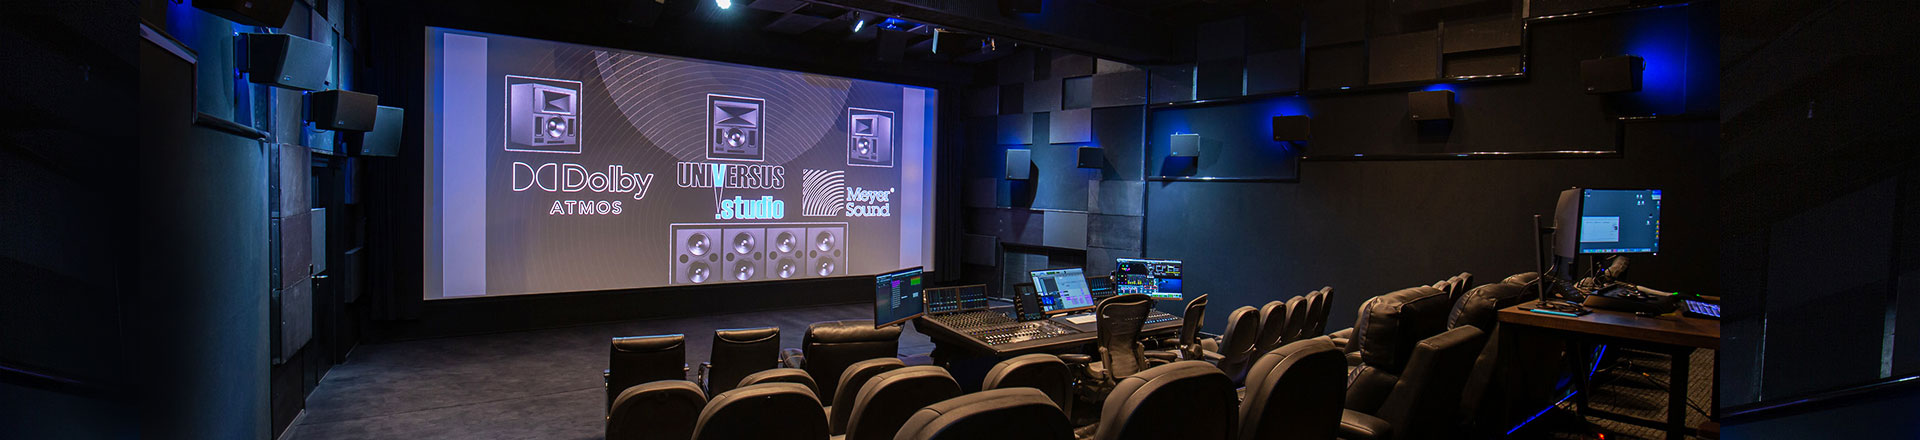 Universus studio - Dolby Atmos Cinema. Nowa instalacja audio Meyer Sound w Warszawie